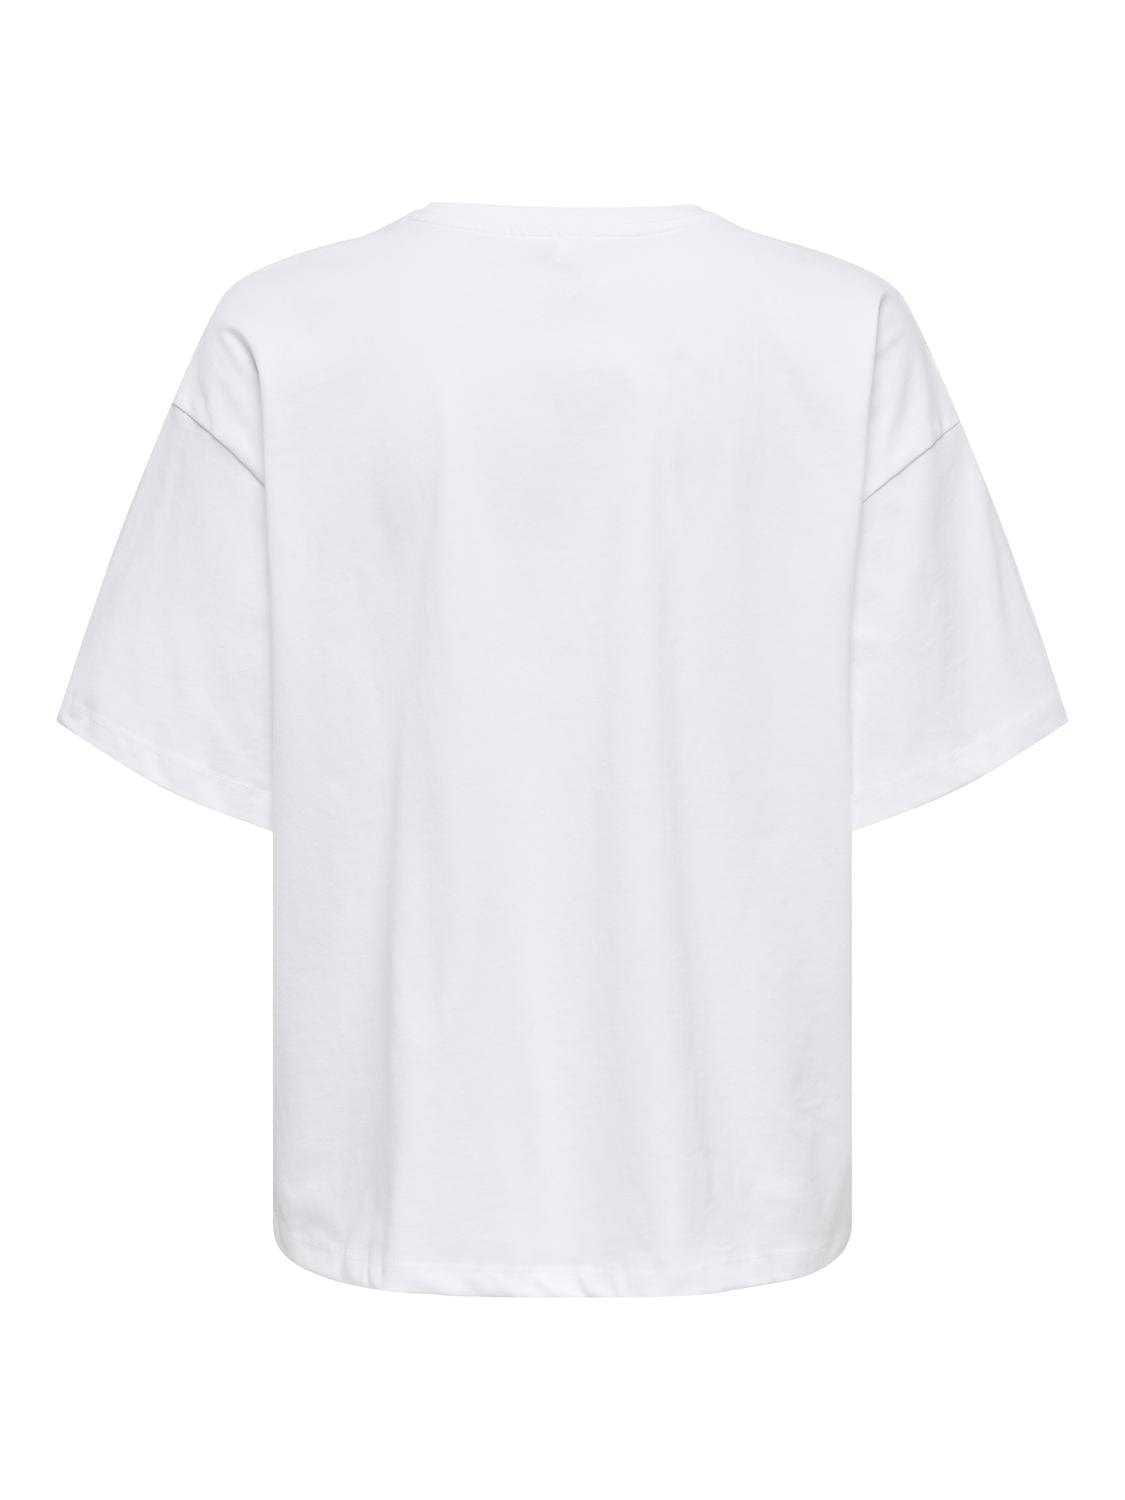 Only Overdele Hvid T-shirts med print - Halia - Only